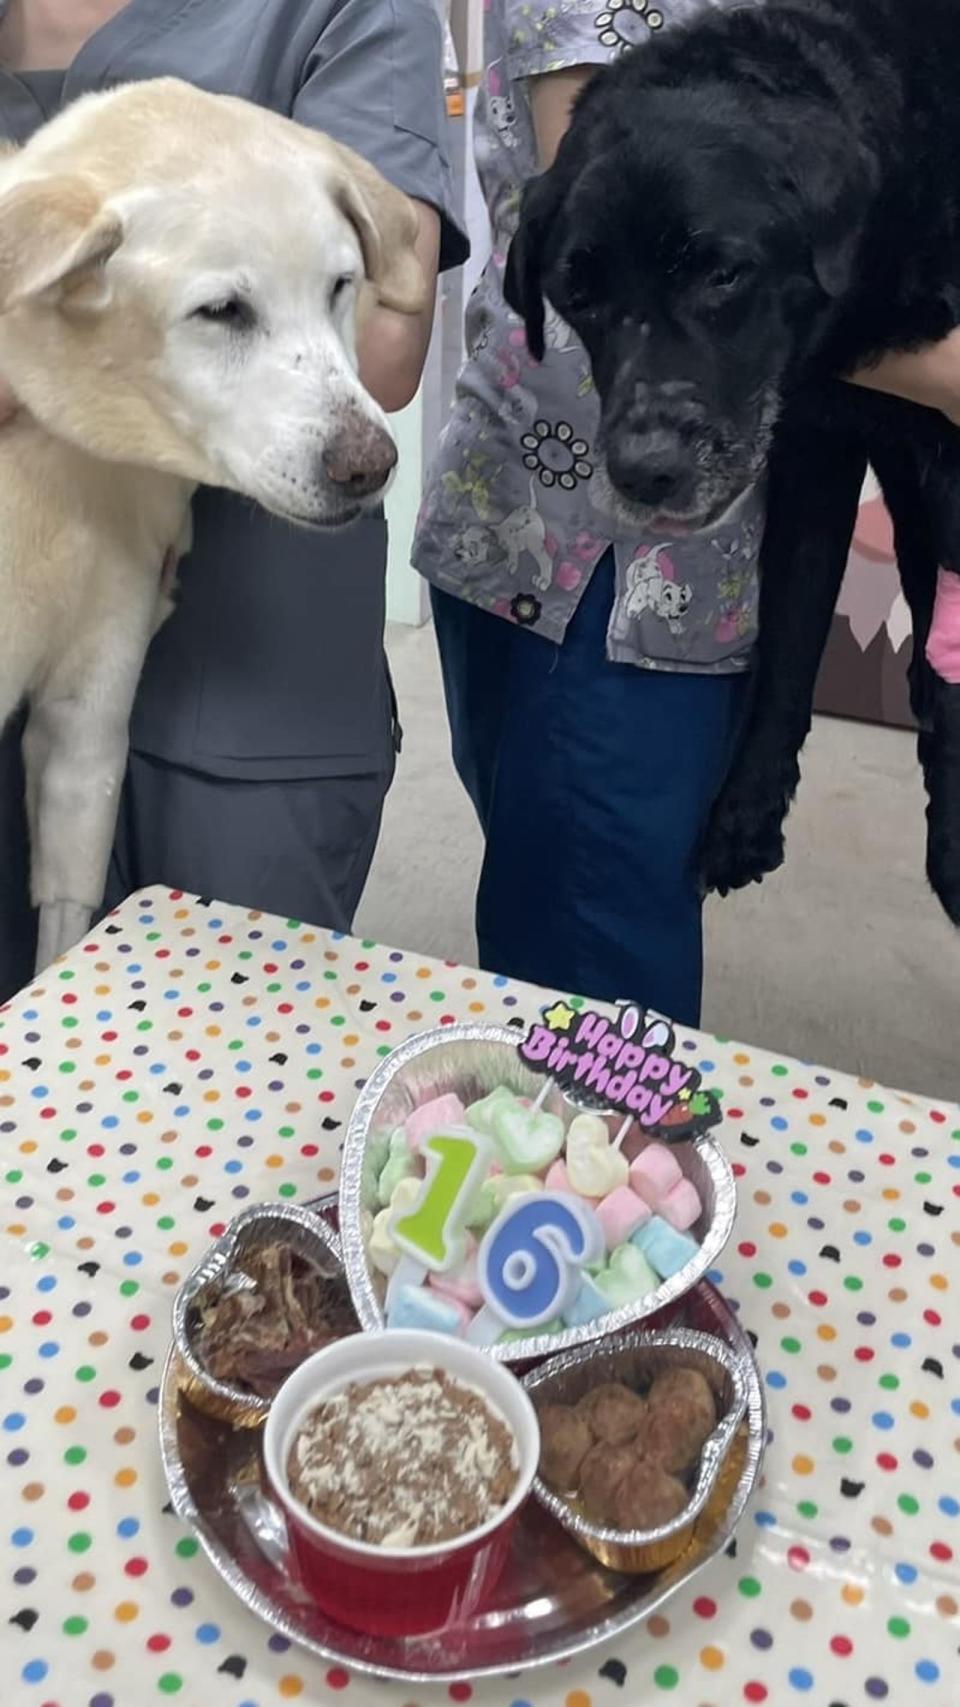 Maru（左）和Bunny（右）都是蔡英文2016年時，從惠光導盲犬學校領養的狗狗。(翻攝自蔡英文臉書)